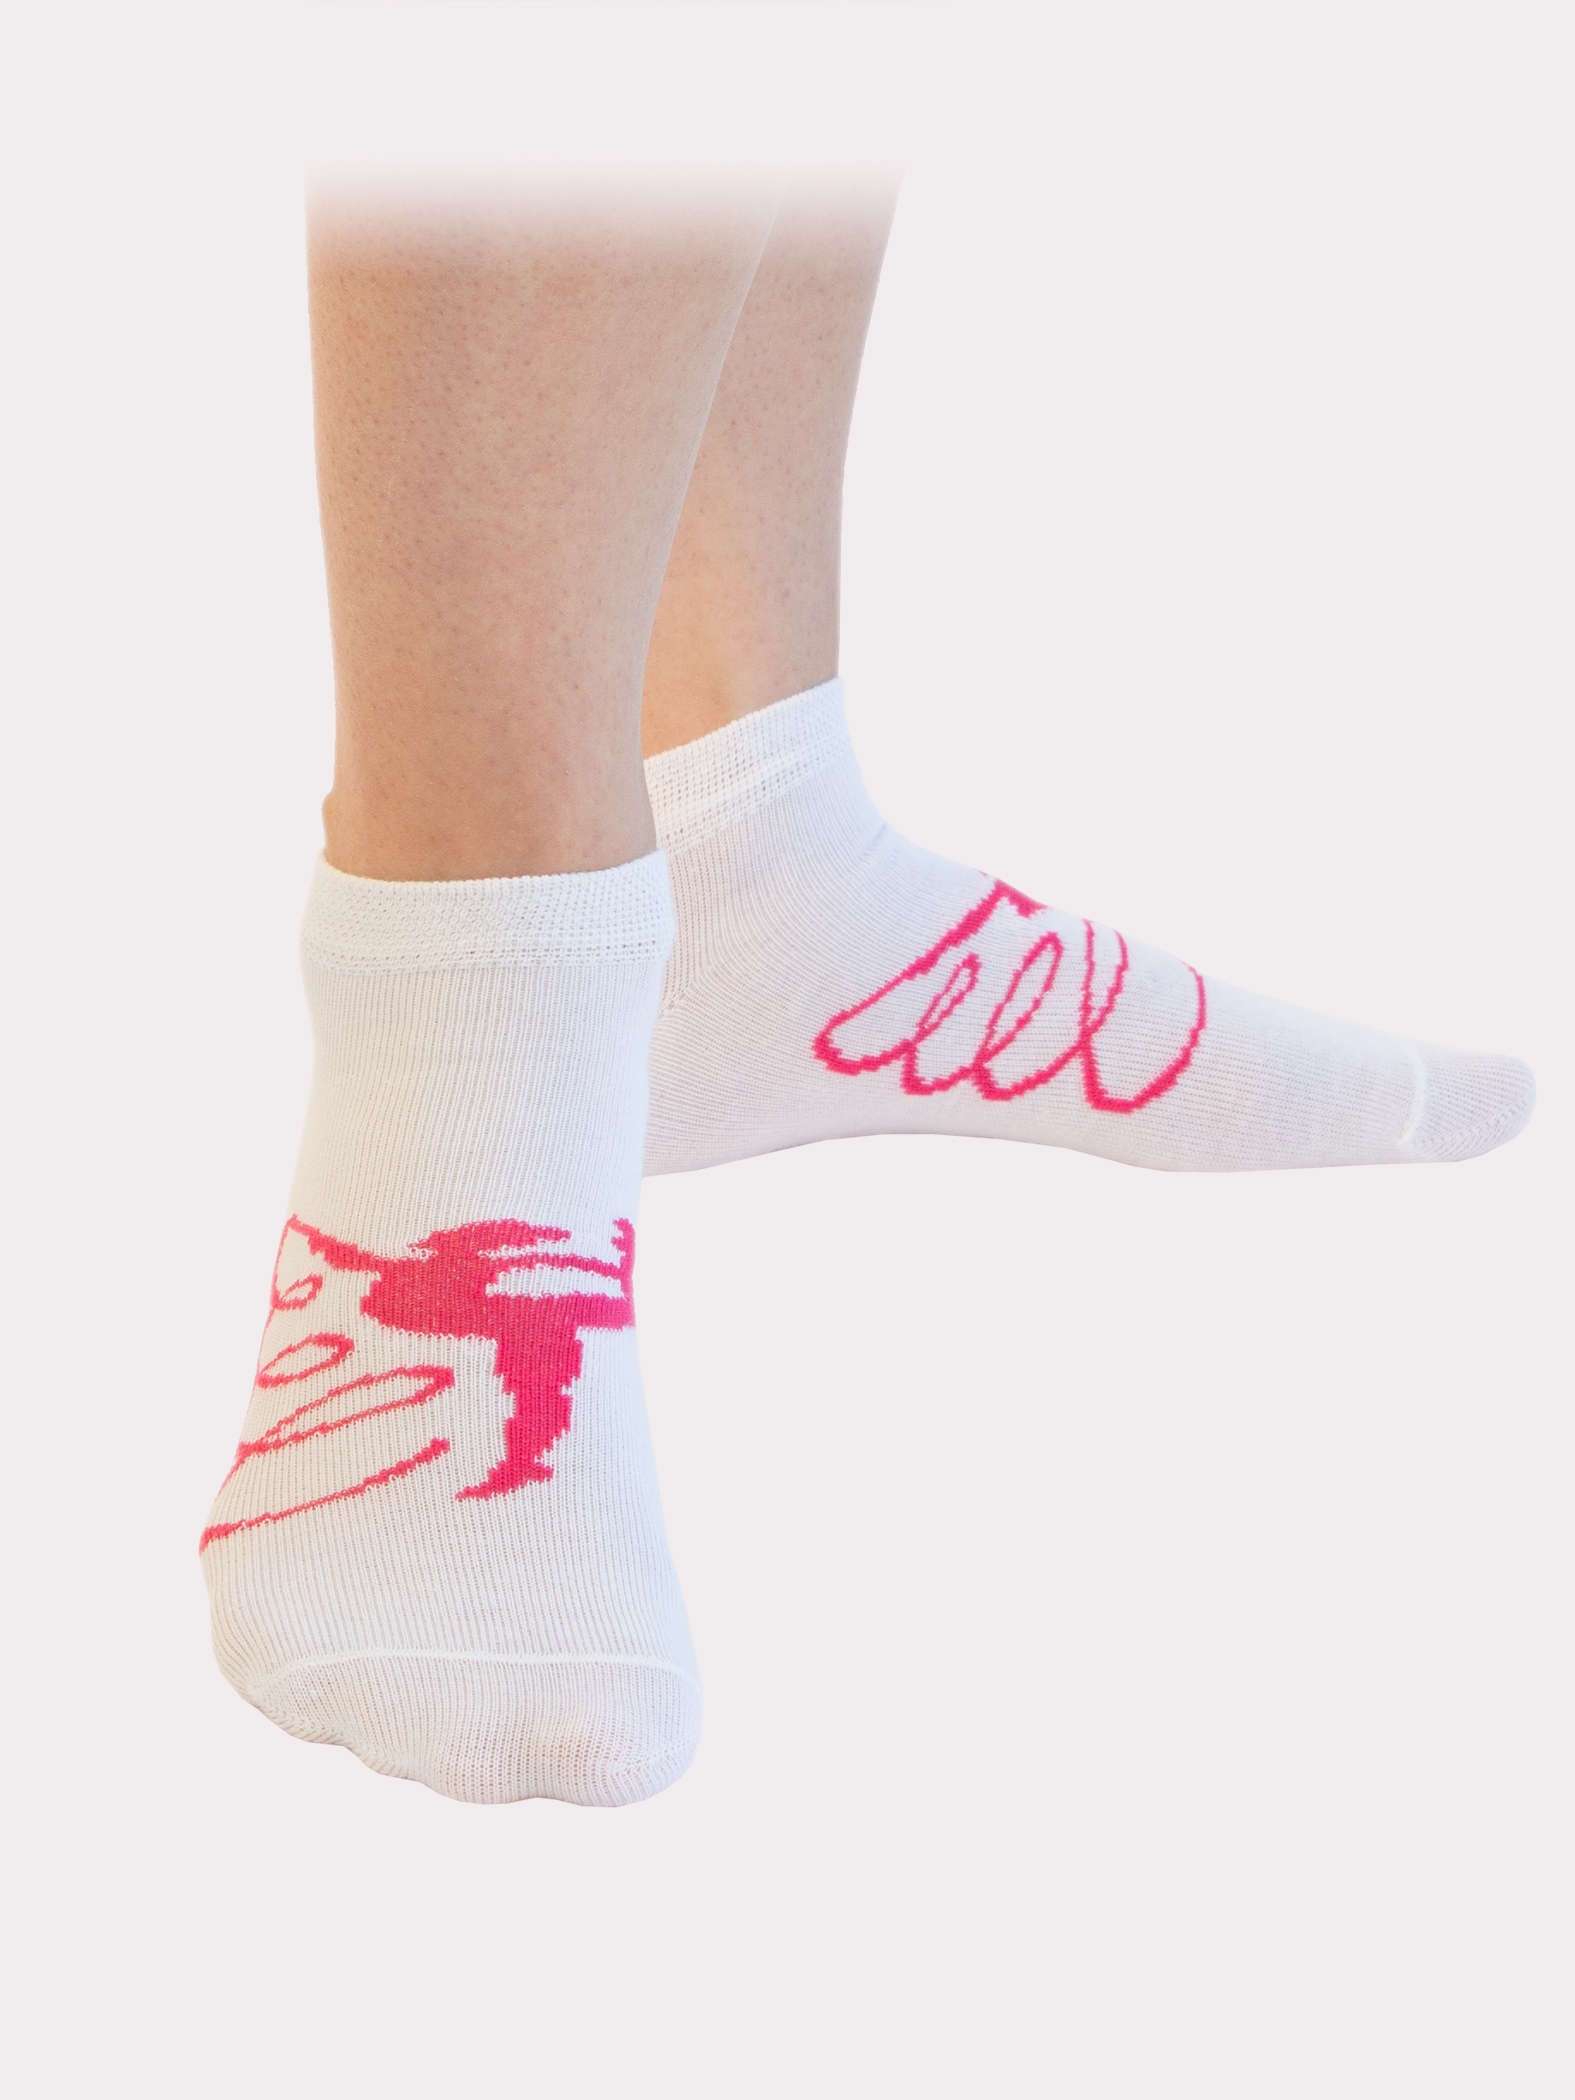 Спортивные носки с большим рисунком гимнастки , укороченный паголенок. Усиленные пятка и носок. Набор 6 пар.